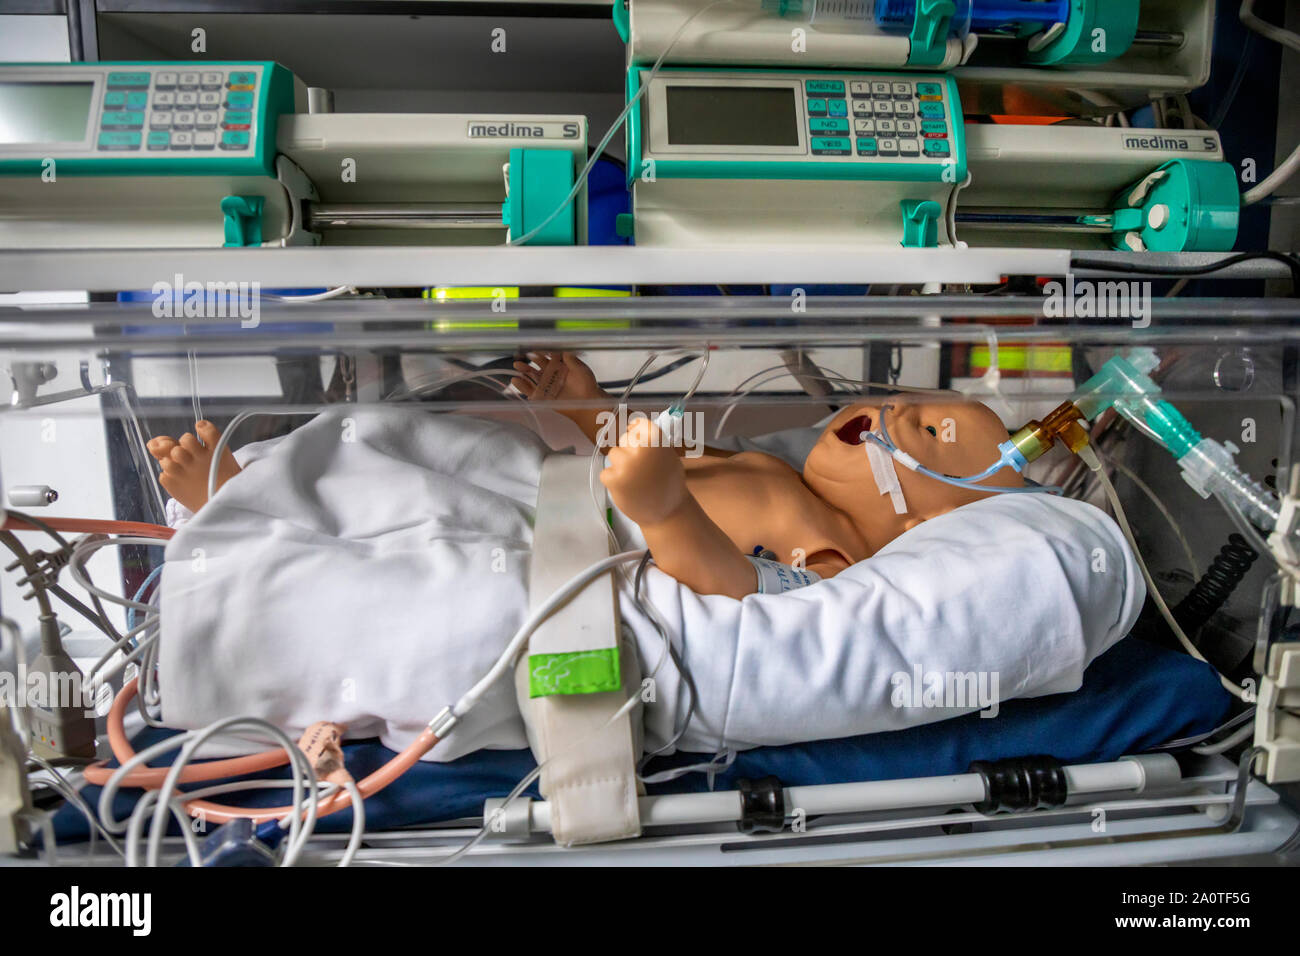 Casella di rianimazione per neonati e bambini prematuri in una ambulanza medica Foto Stock